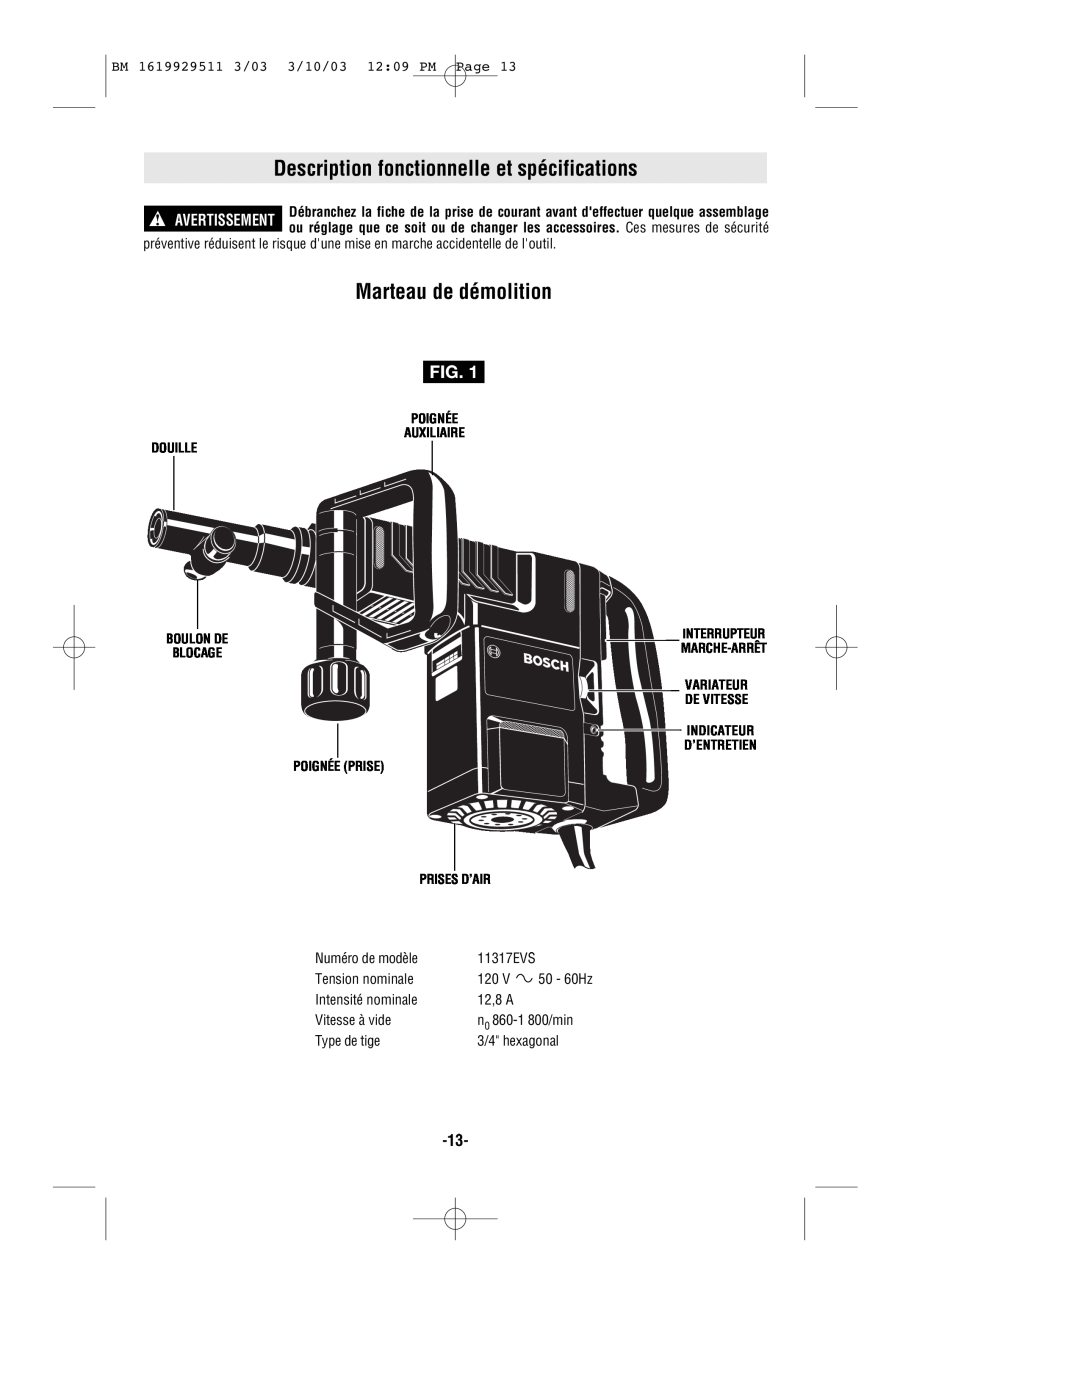 Bosch Power Tools 11317EVS manual Description fonctionnelle et spécifications, Marteau de démolition, Prises D’Air 